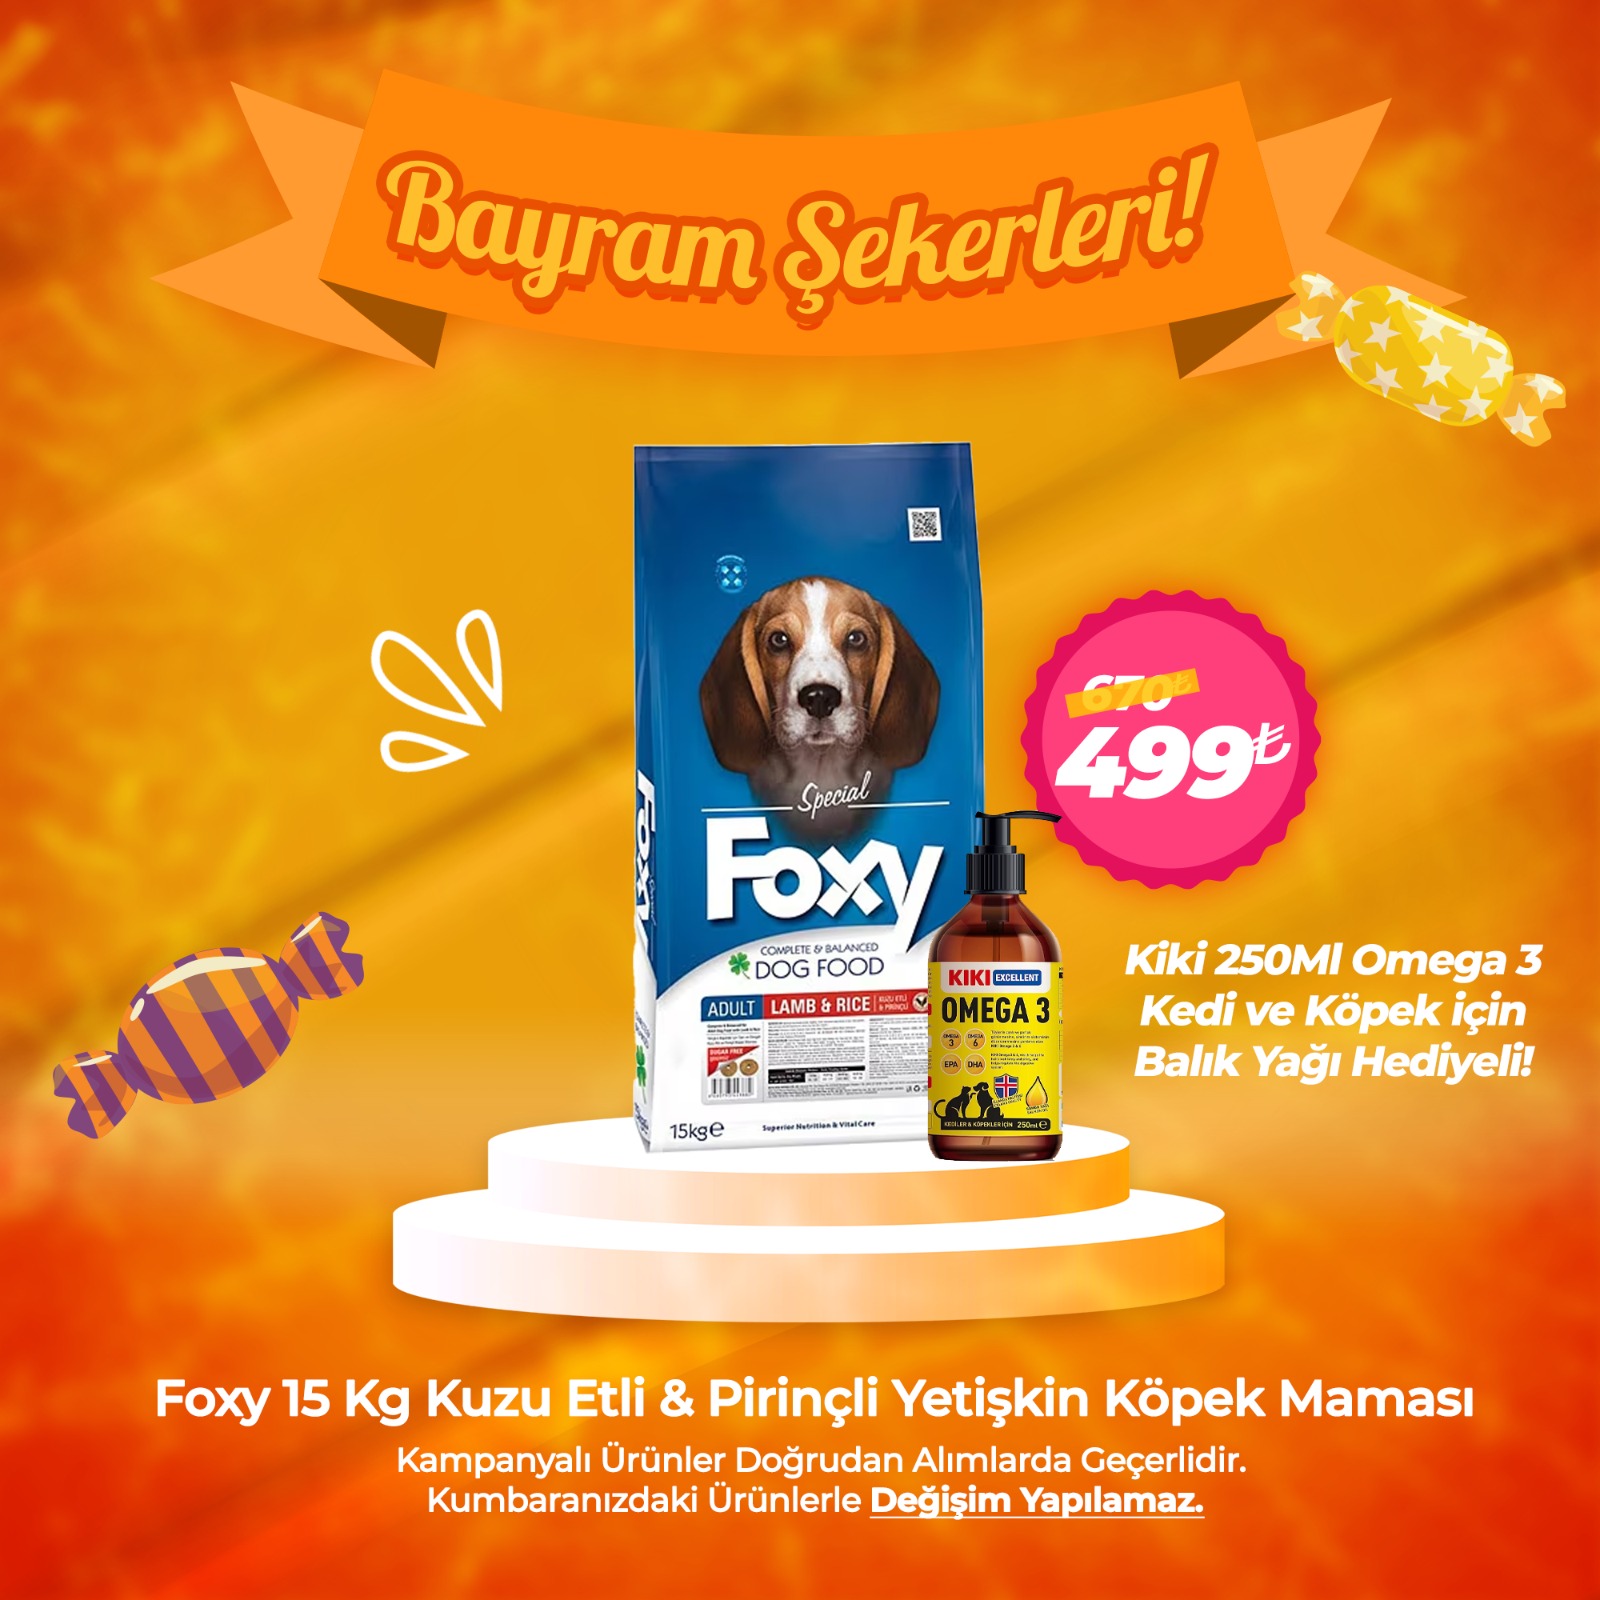 Foxy 15 Kg Kuzu Etli Yetişkin Köpek Maması - Kiki 250Ml Omega 3 Balık Yağı Hediyeli